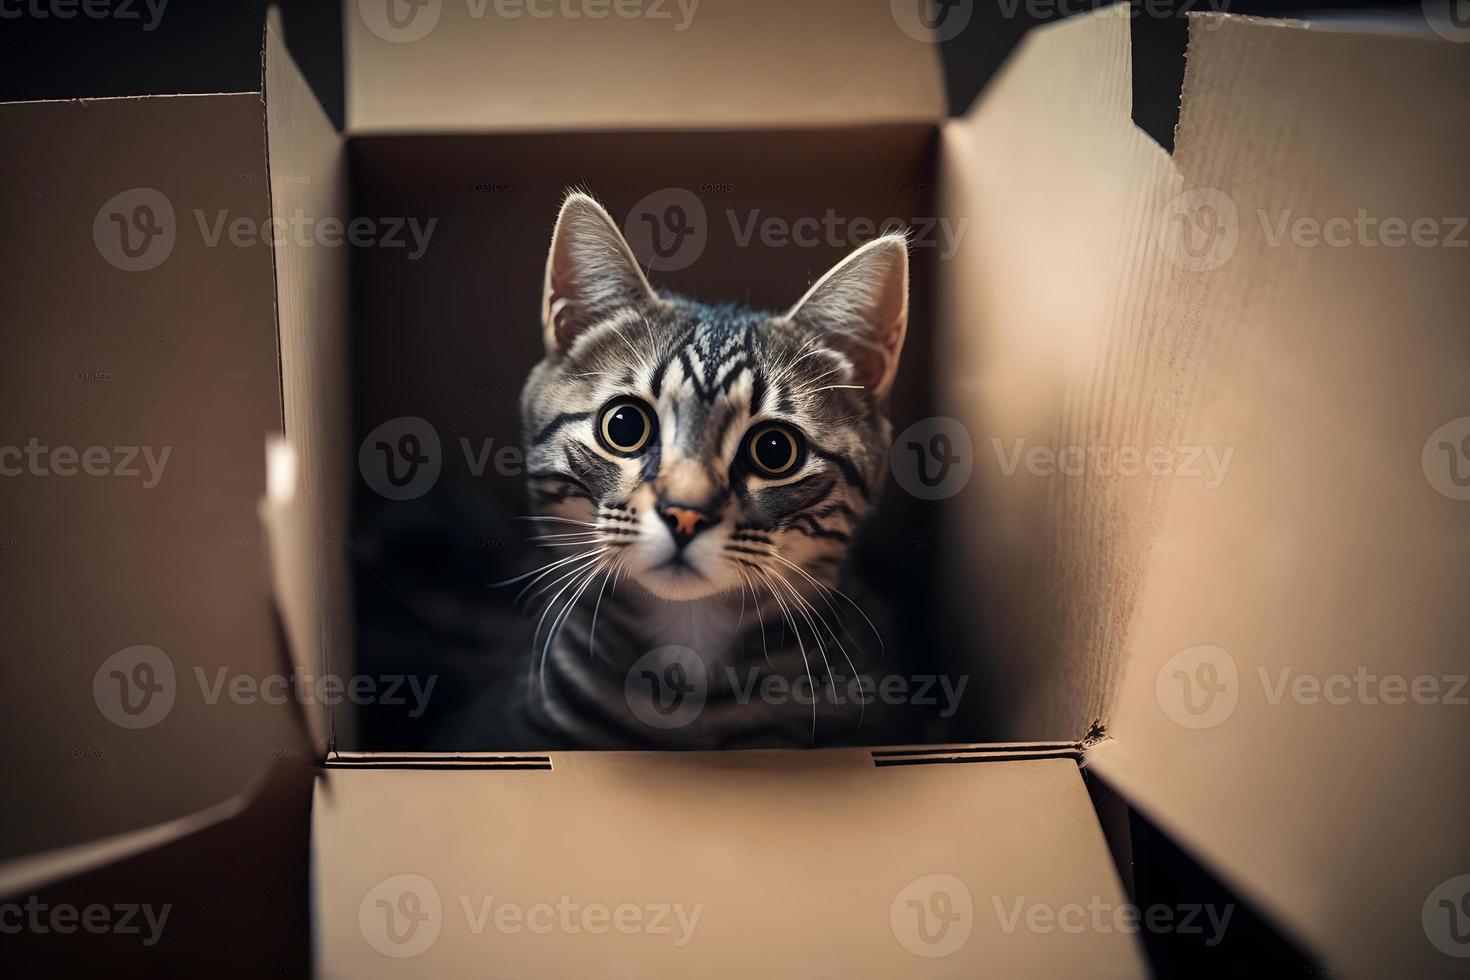 Porträt süß grau Tabby Katze im Karton Box auf Fußboden beim Zuhause Fotografie foto